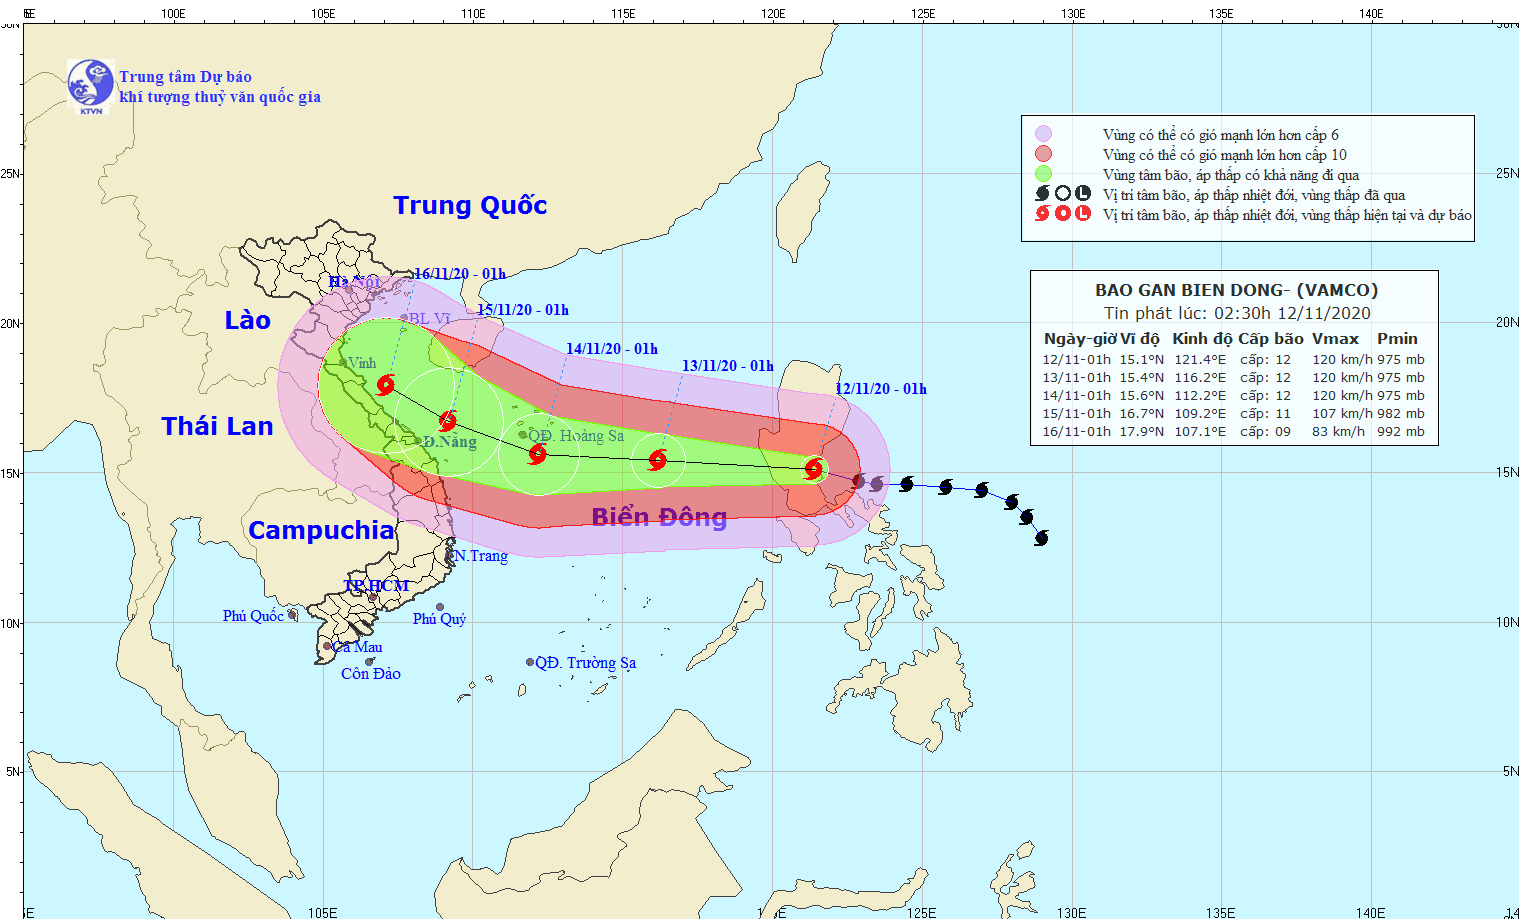 Bão Vamco đang tiến nhanh vào biển Đông, dự báo bão đổ bộ từ Hà Tĩnh đến Quảng Nam